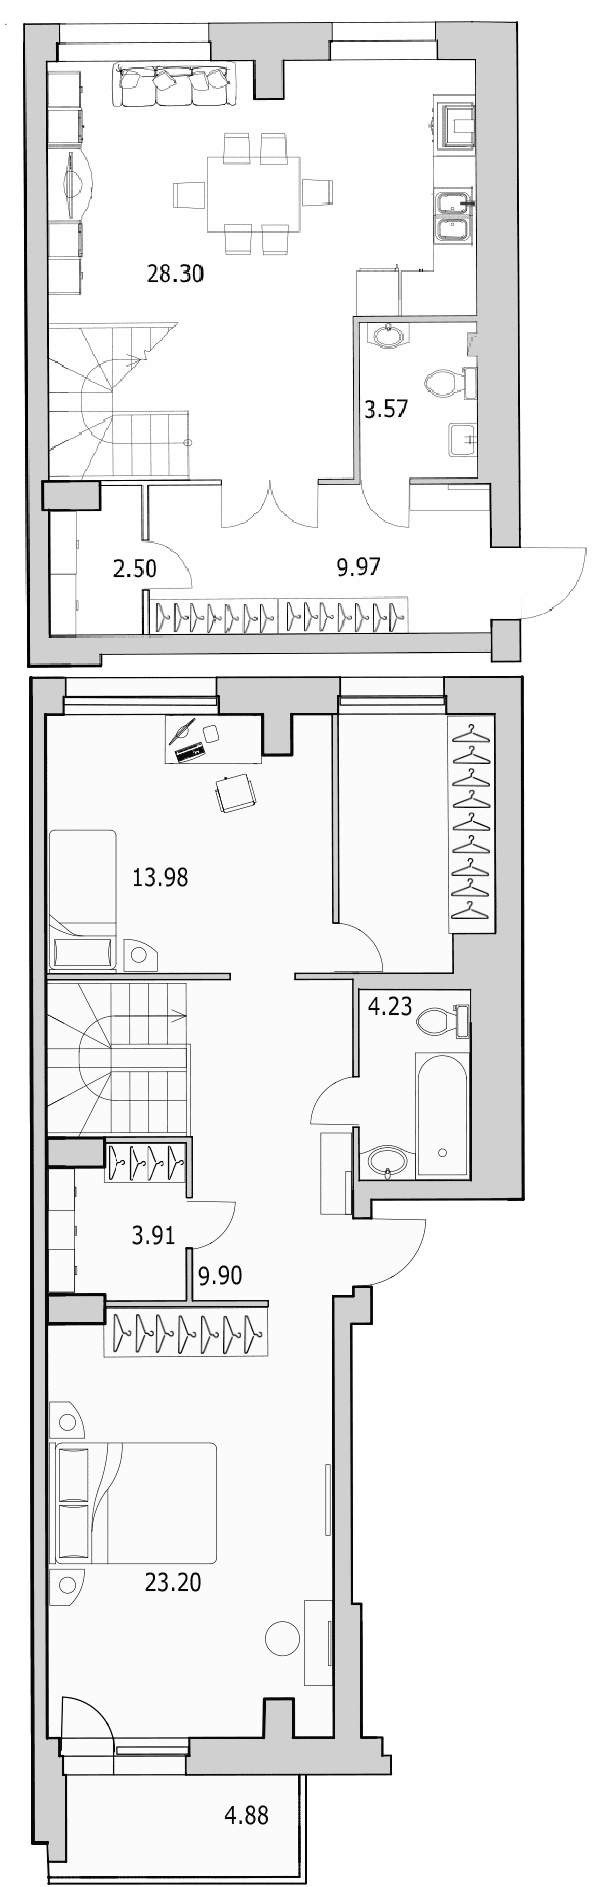 3-комнатная (Евро) квартира, 112.7 м² в ЖК "Байрон" - планировка, фото №1